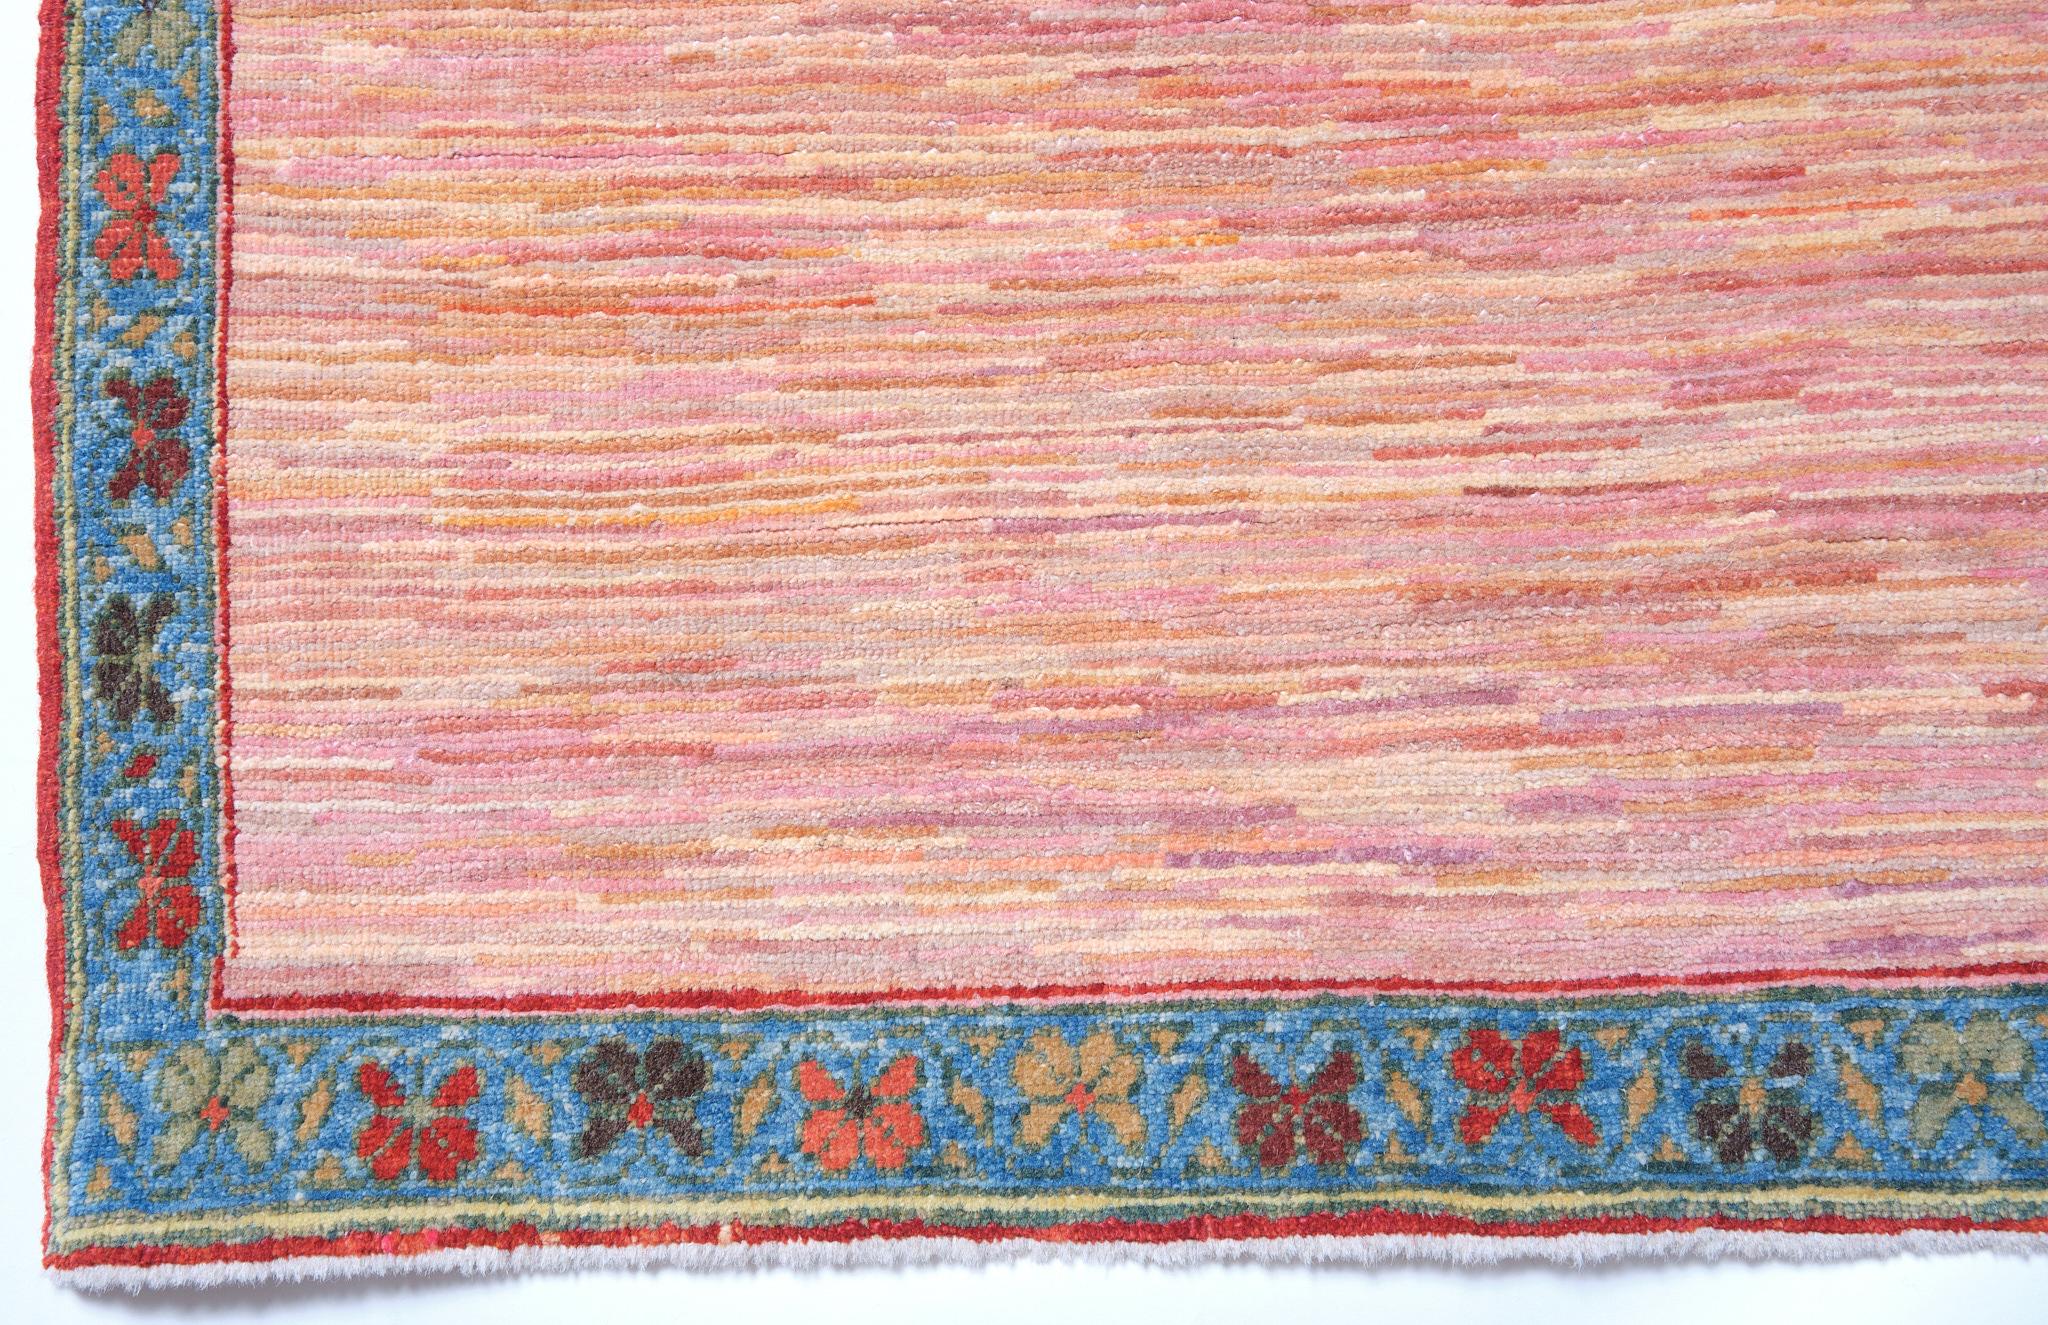 Dieser einzigartige Designteppich wurde von unseren Designern mit einer Mischung aus den weichen, natürlich gefärbten und handgesponnenen Garnen von Ararat Rugs interpretiert.

Farbübersicht: 10 Farben insgesamt, die 4 meistverwendeten Farben